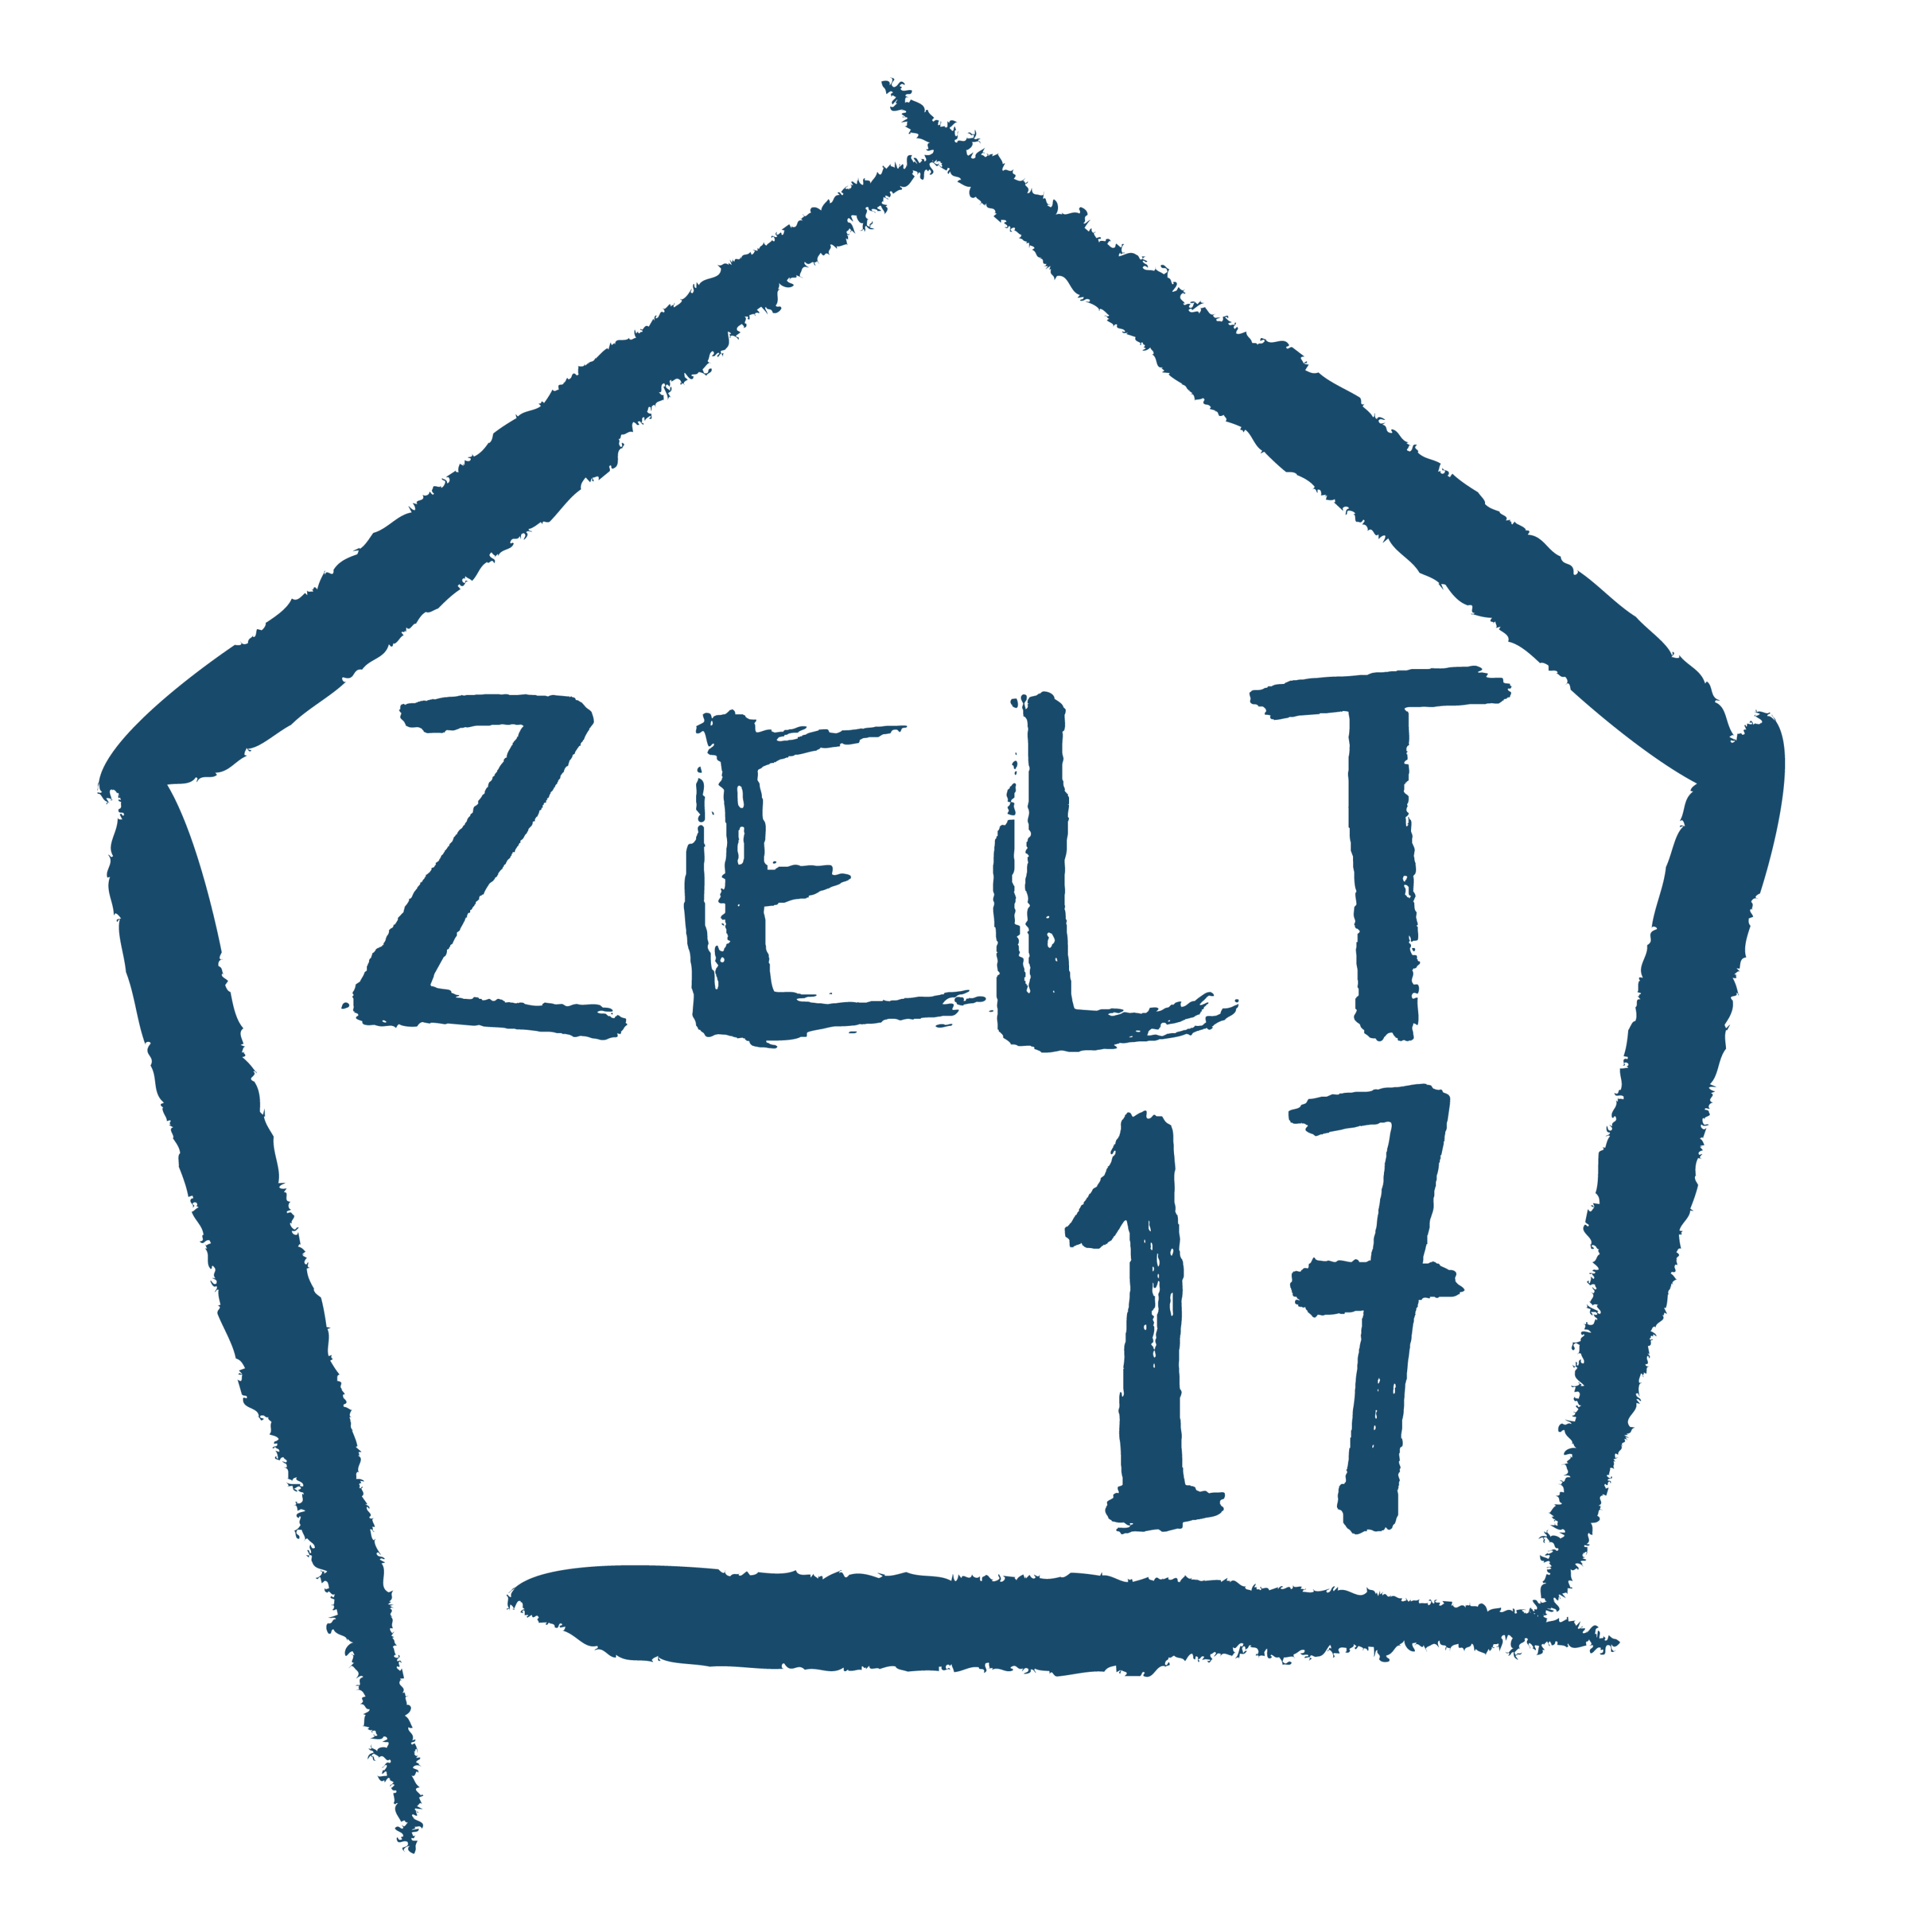 logo_zelt17_Mai